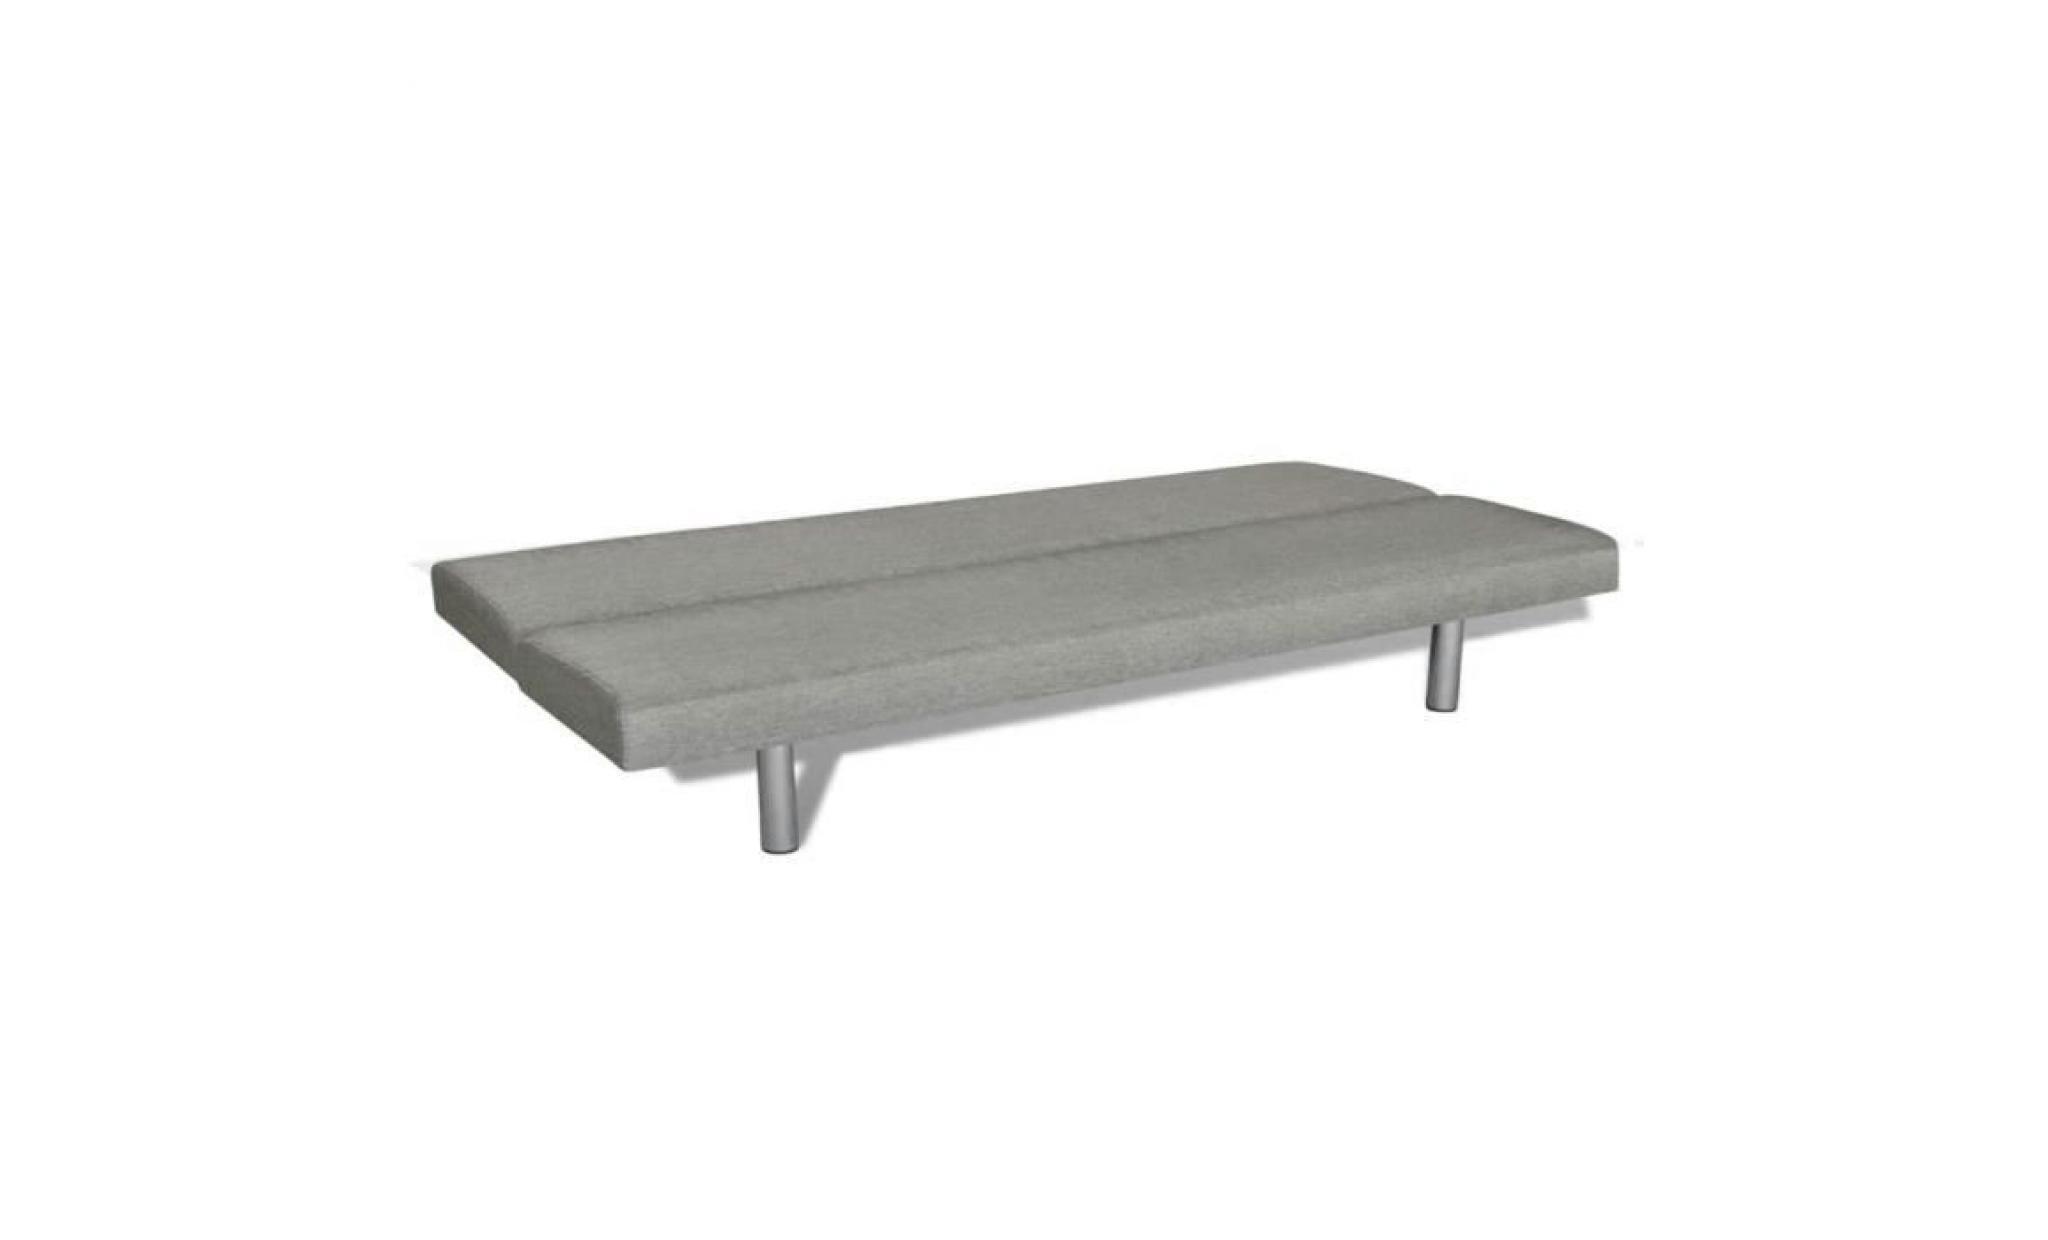 canapé sofa clic clac gris foncé pas cher